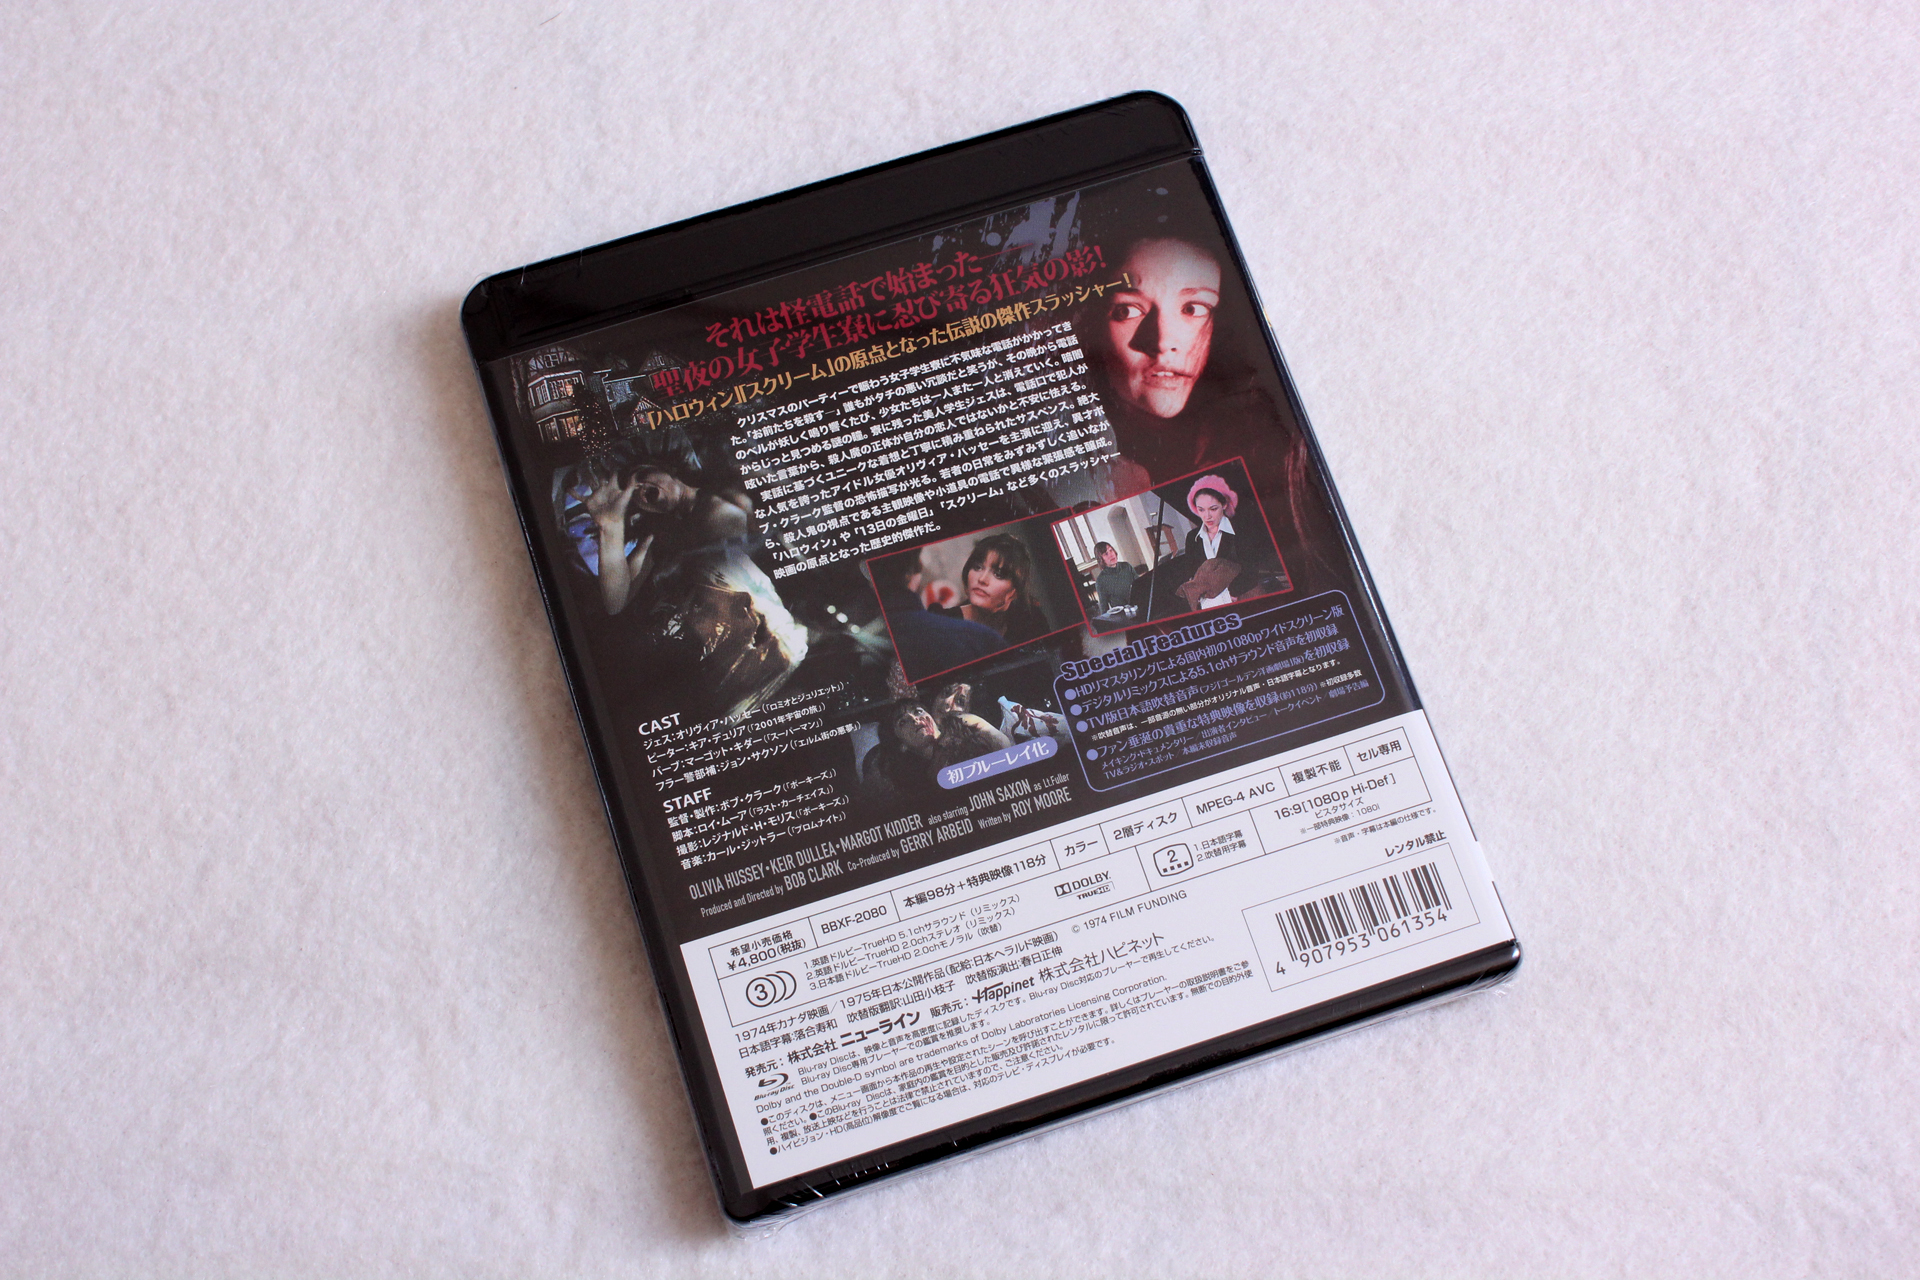 ブルーレイ「暗闇にベルが鳴る HDリマスター版」が届いたので記念写真–O・ハッセーu003d岡本茉莉[BD][Blu-ray] | 録画地獄